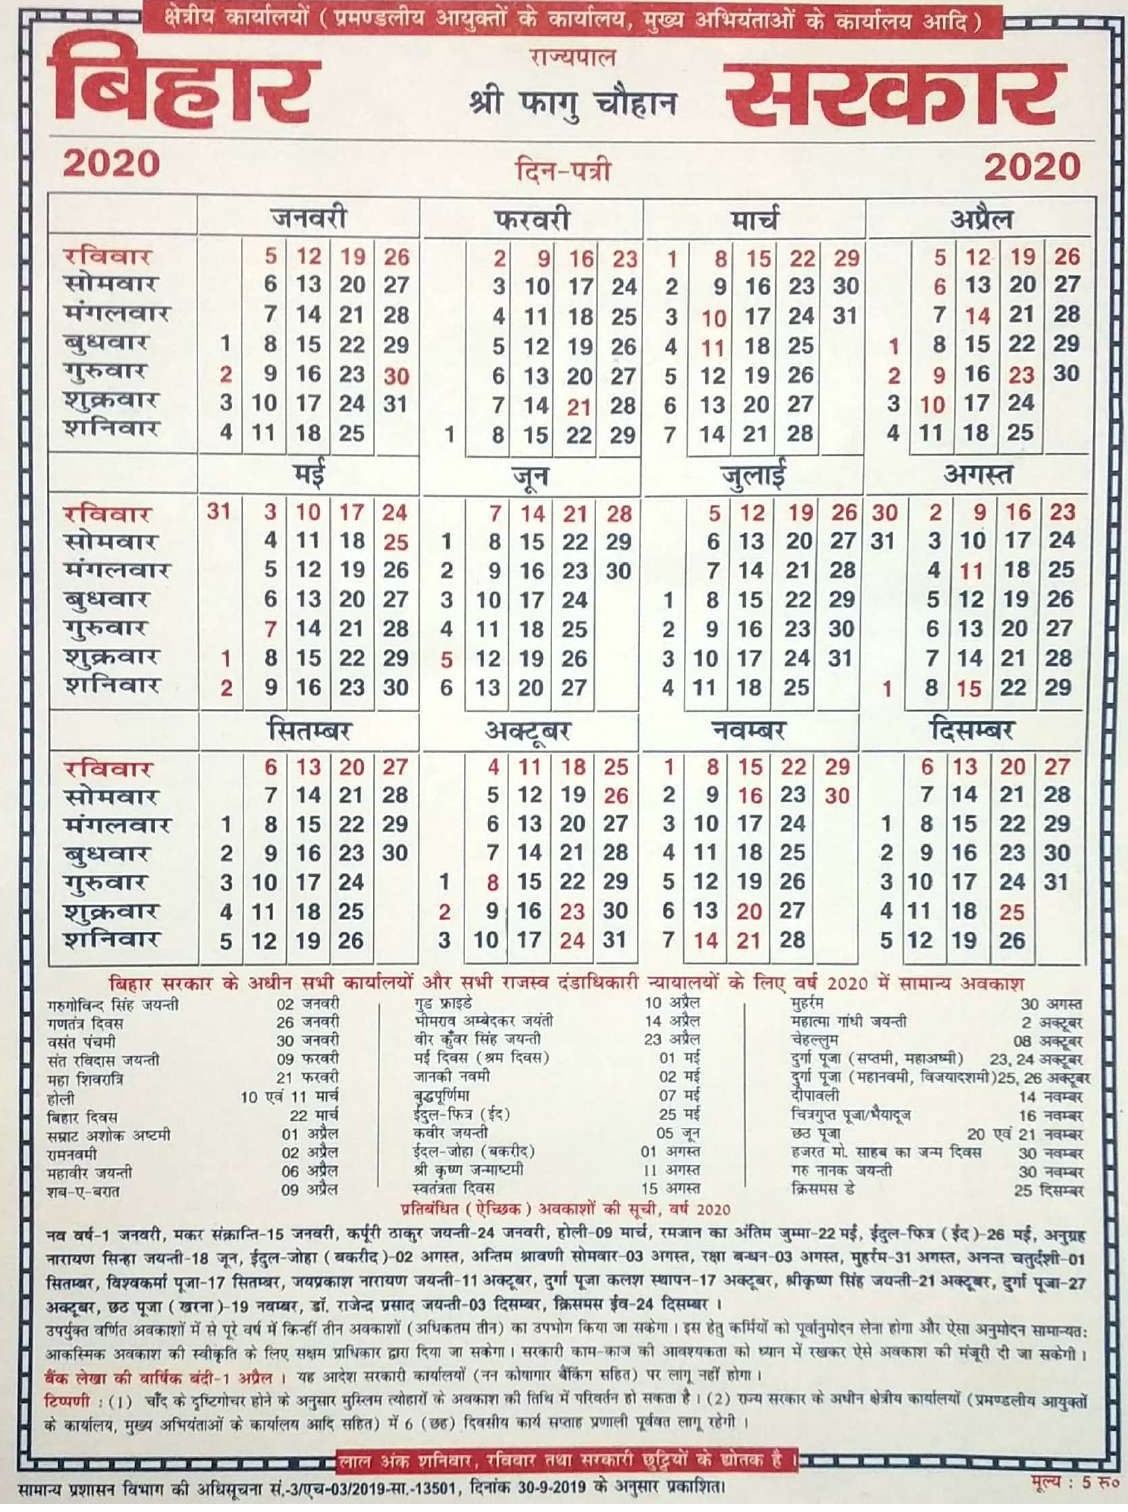 Bihar Sarkar Calendar 2021 – Printable Blank Calendar Template